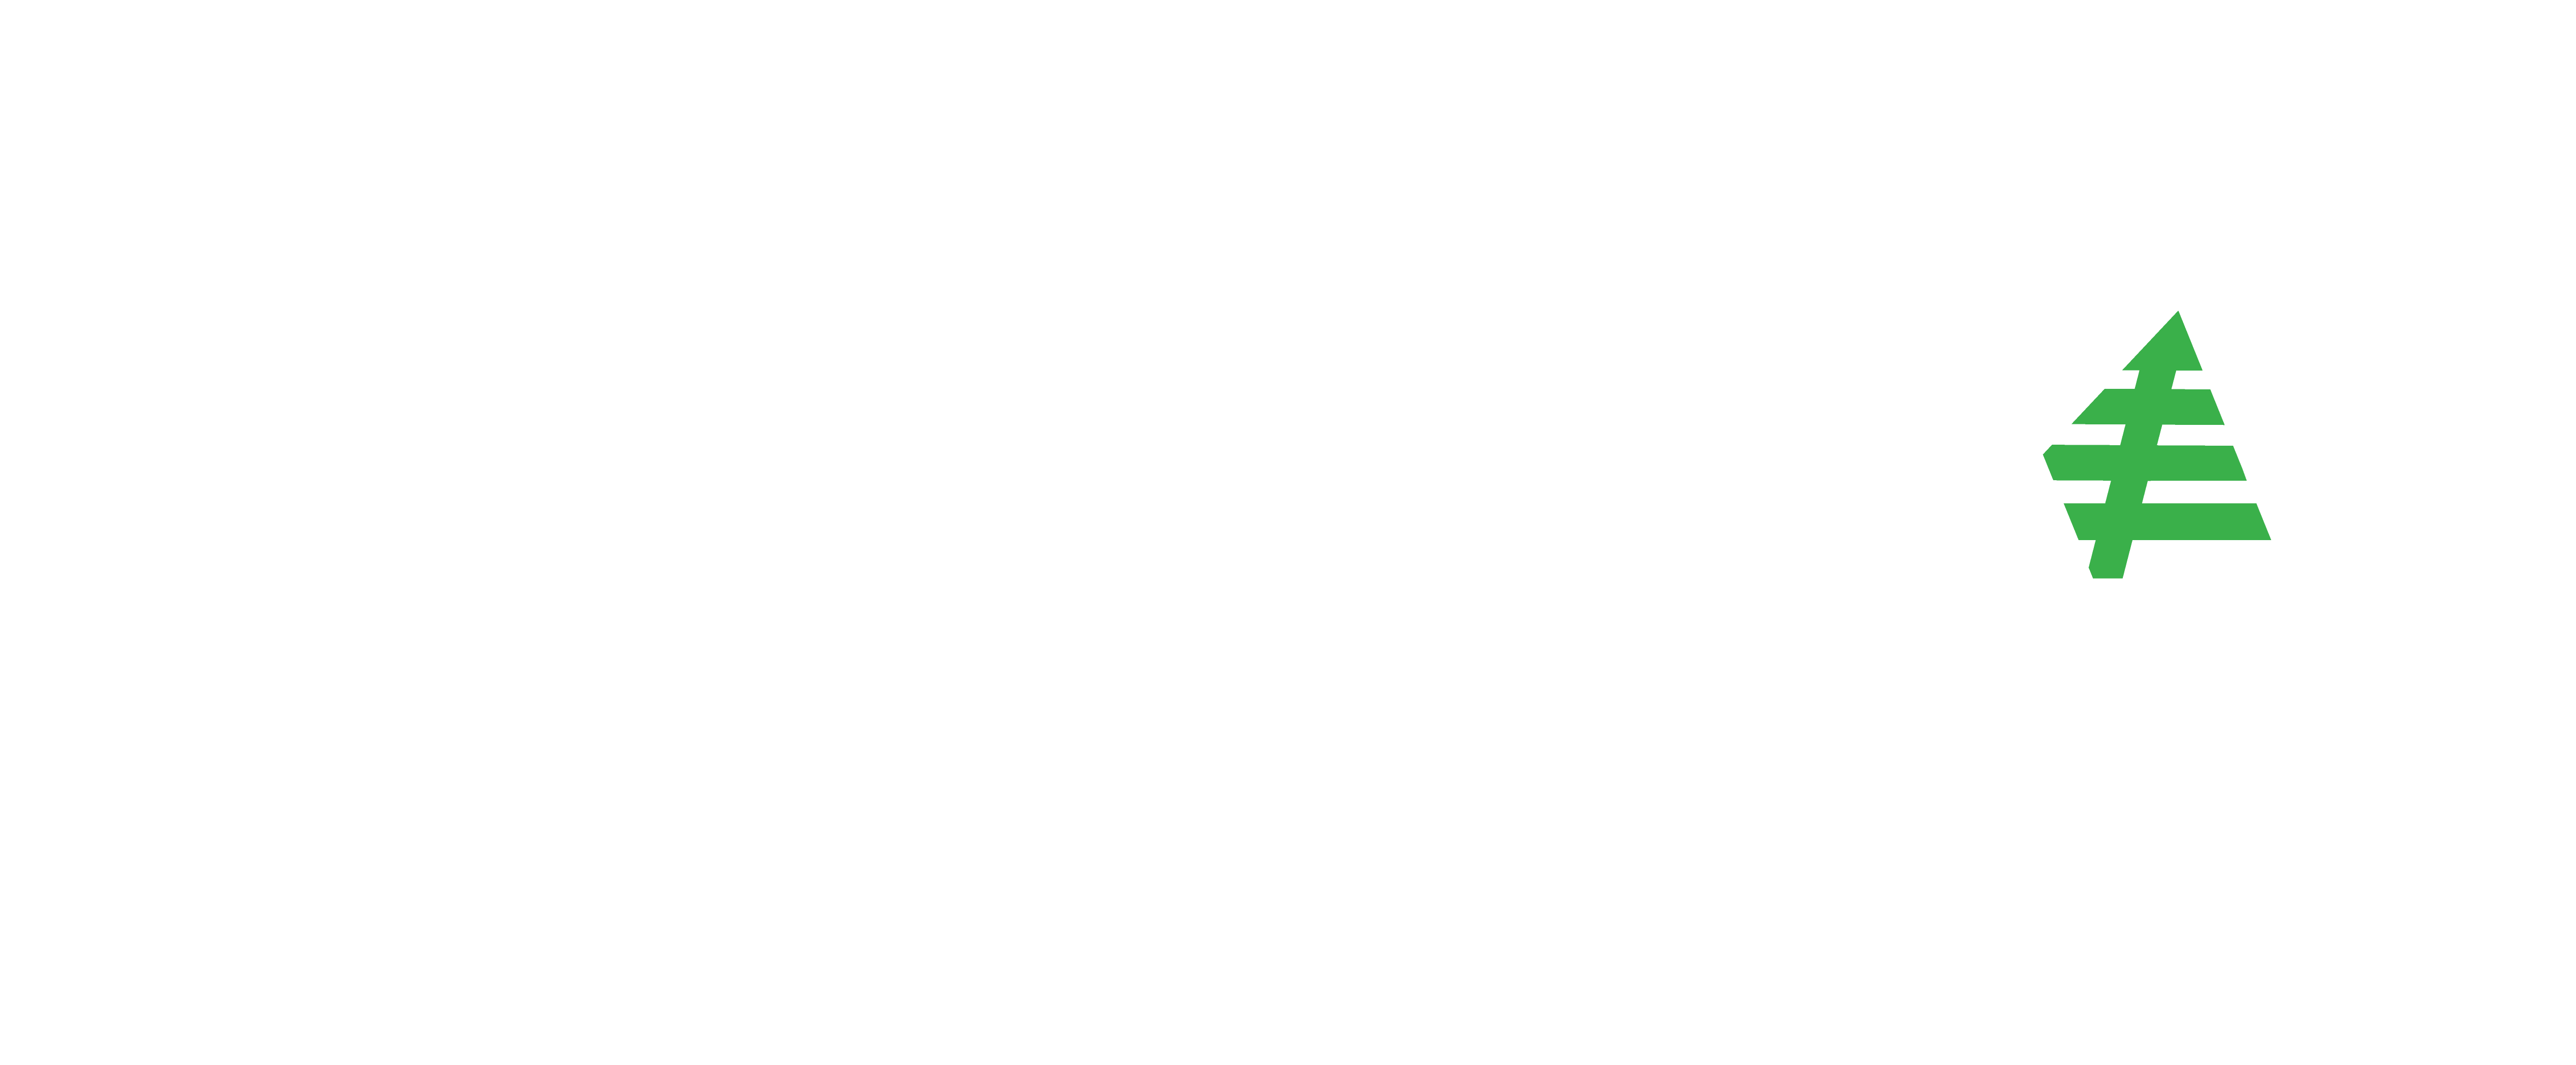 Organix Applied